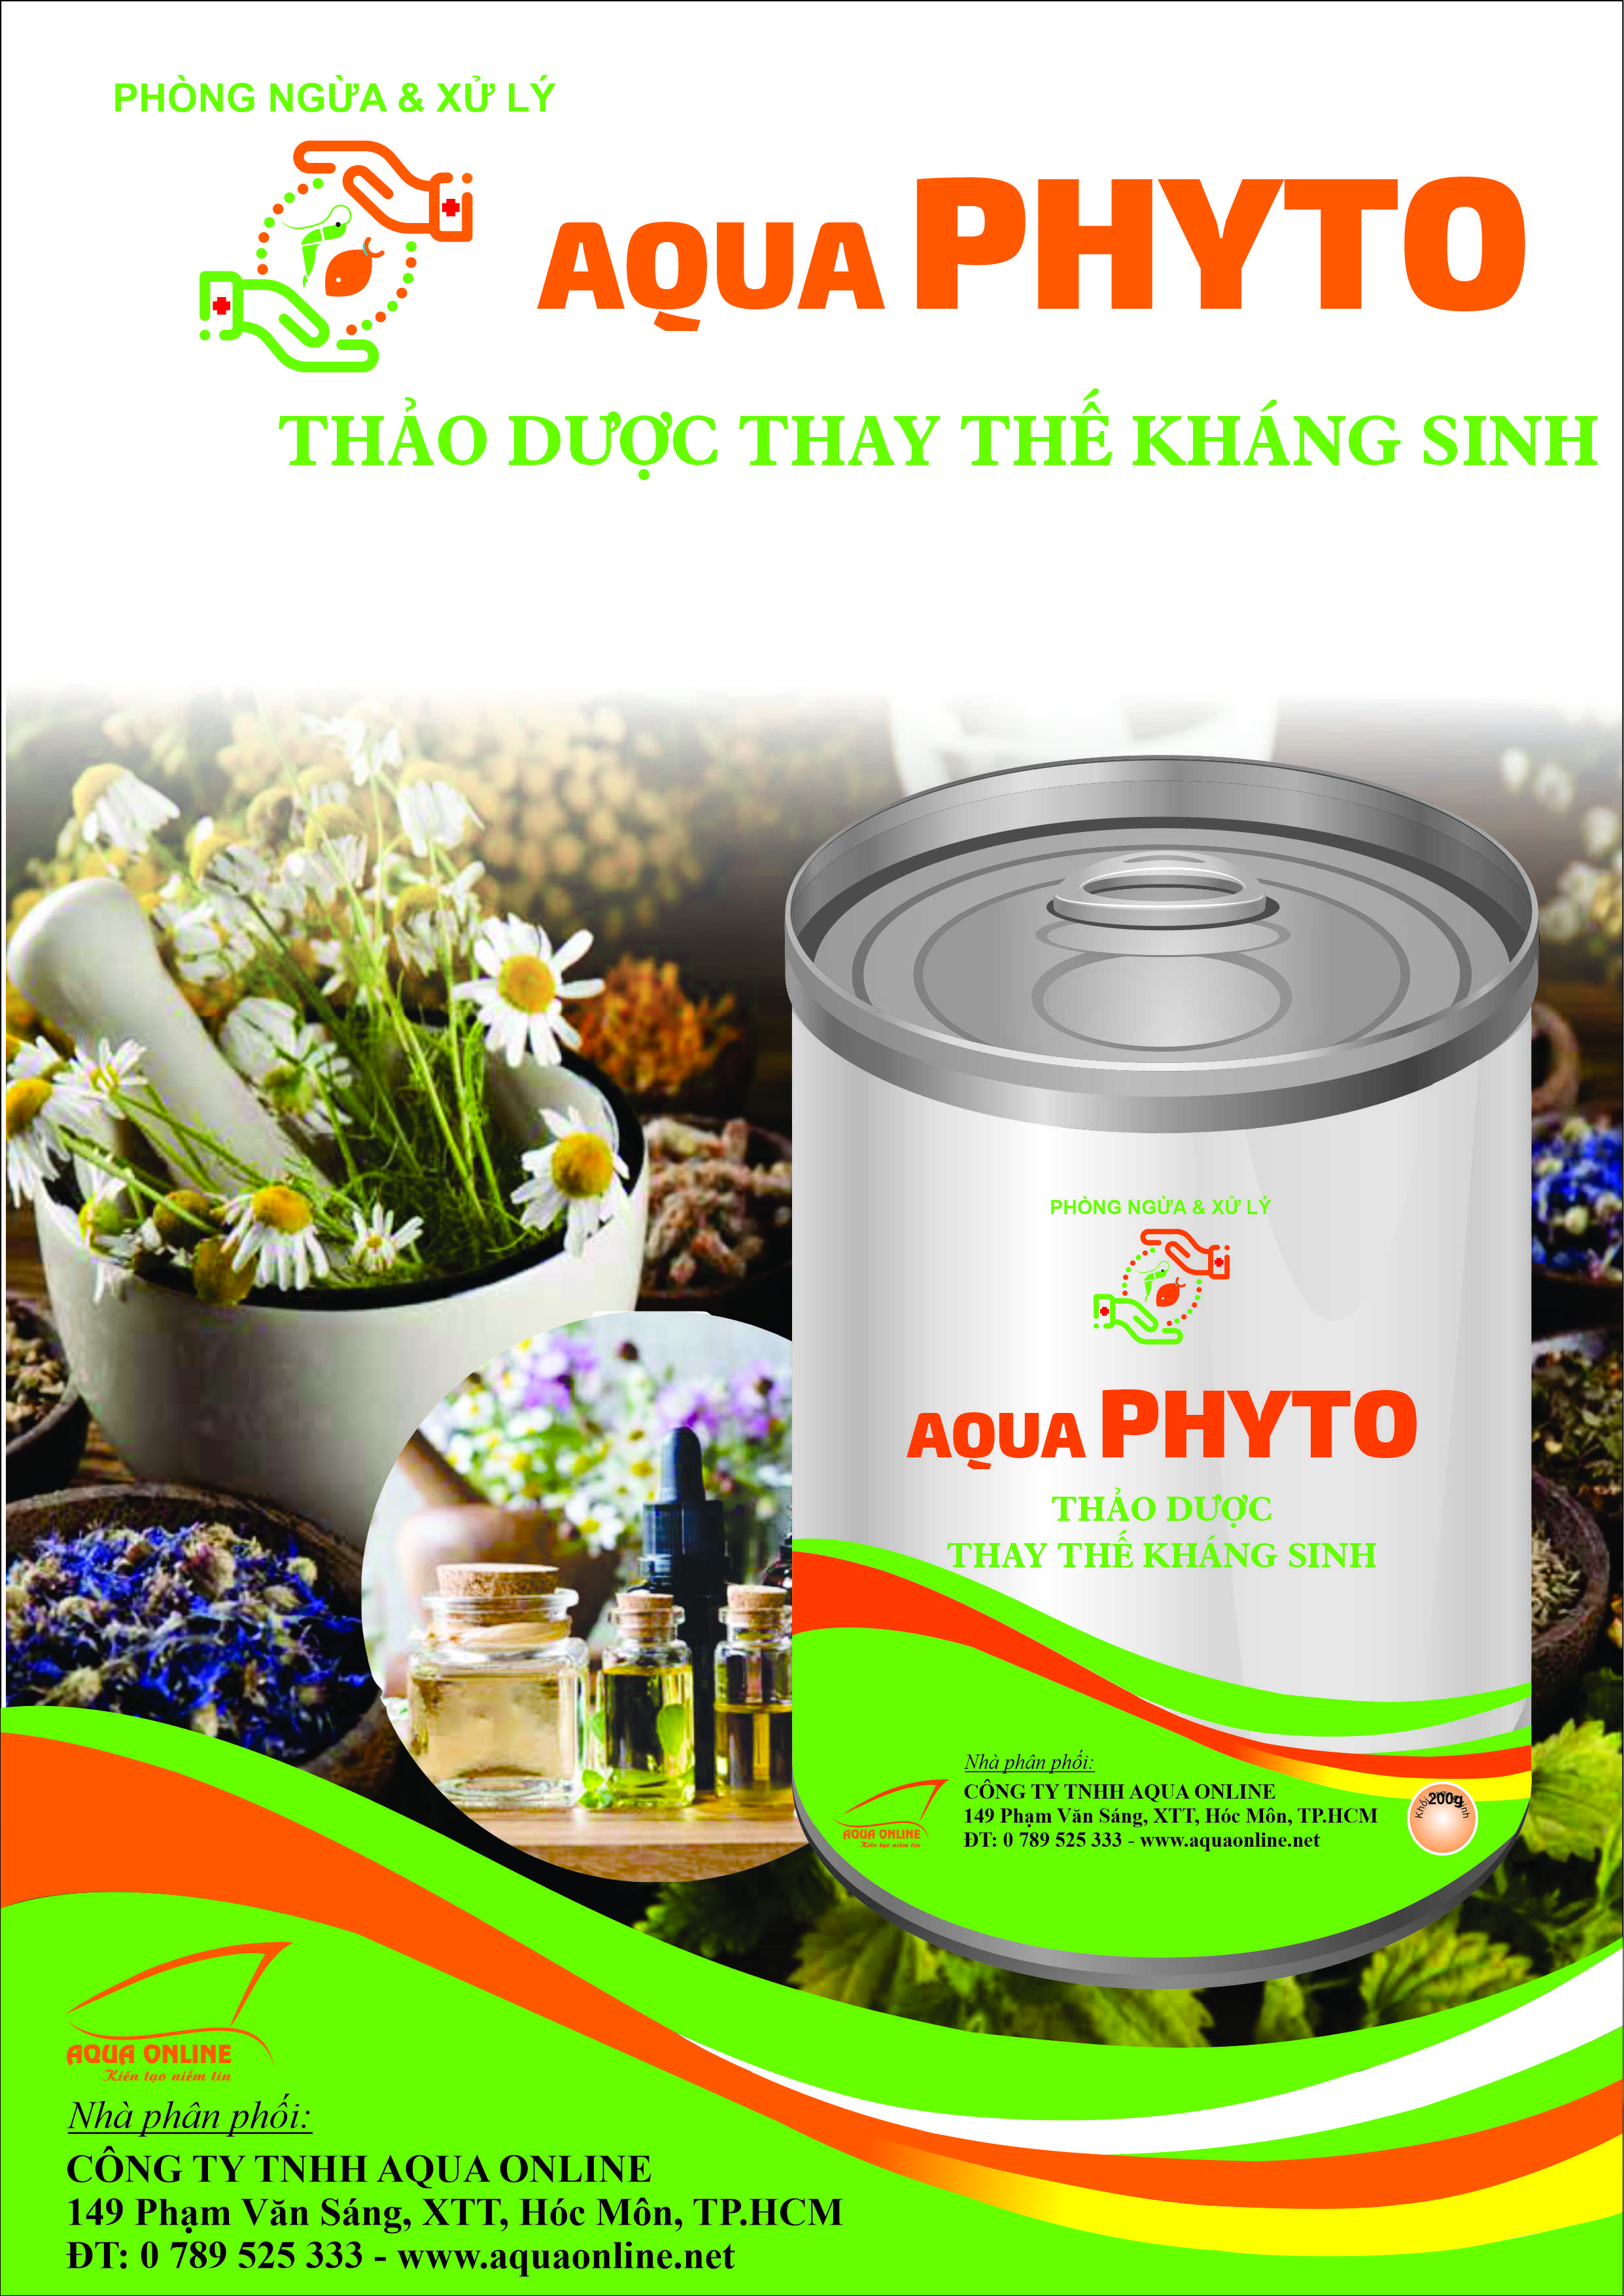 Aqua Phyto chứa 12 lại thảo dược, thay thế hoàn toàn kháng sinh. Phòng bệnh phân trắng EMS, EHP, phục hồi gan tuỵ